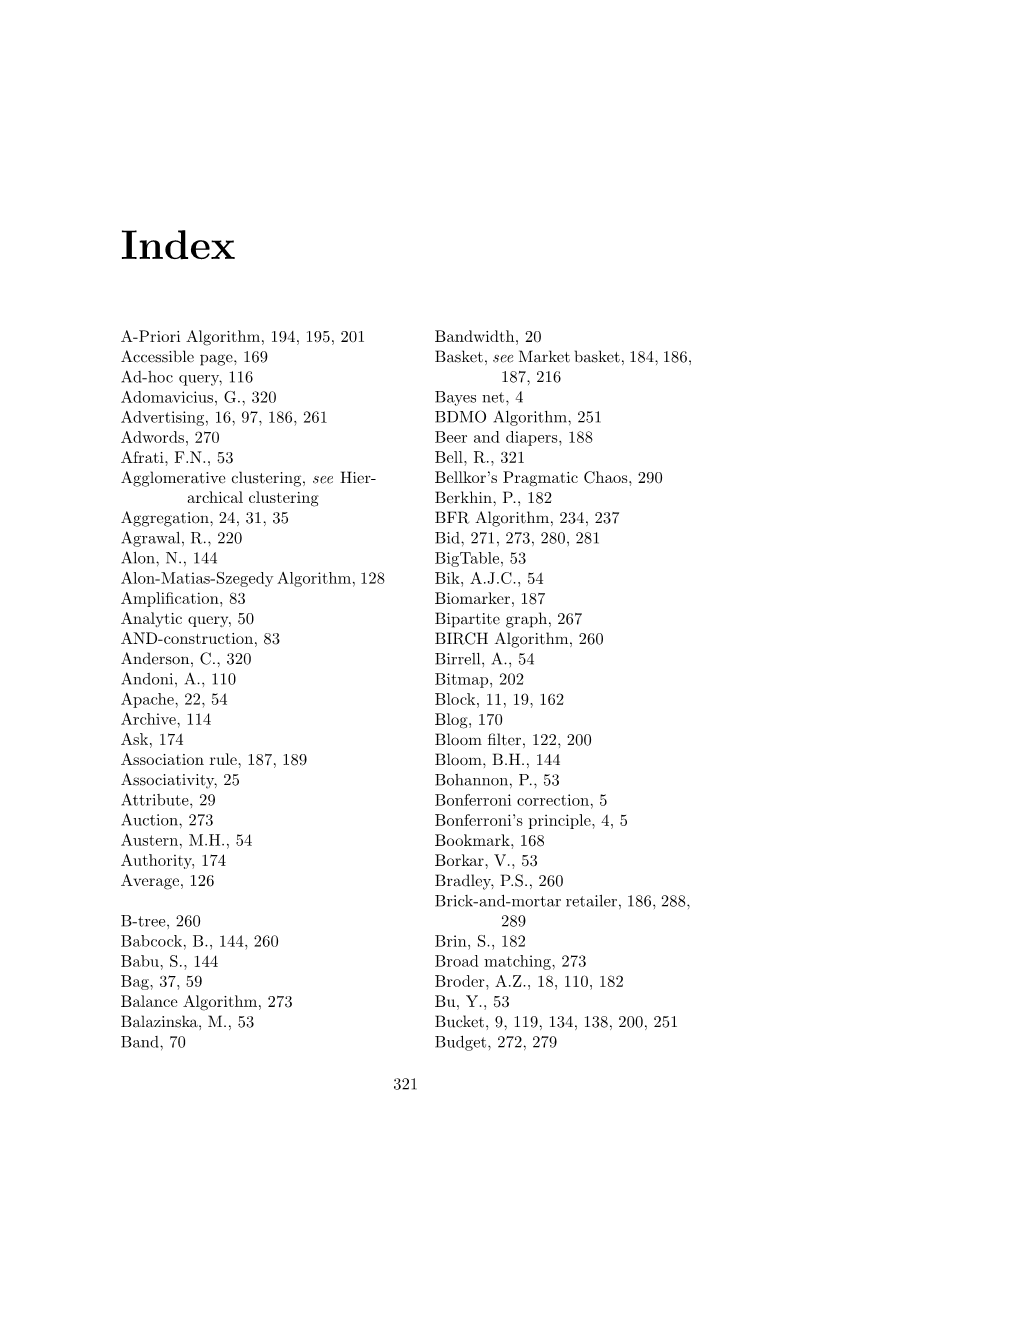 A-Priori Algorithm, 194, 195, 201 Accessible Page, 169 Ad-Hoc Query